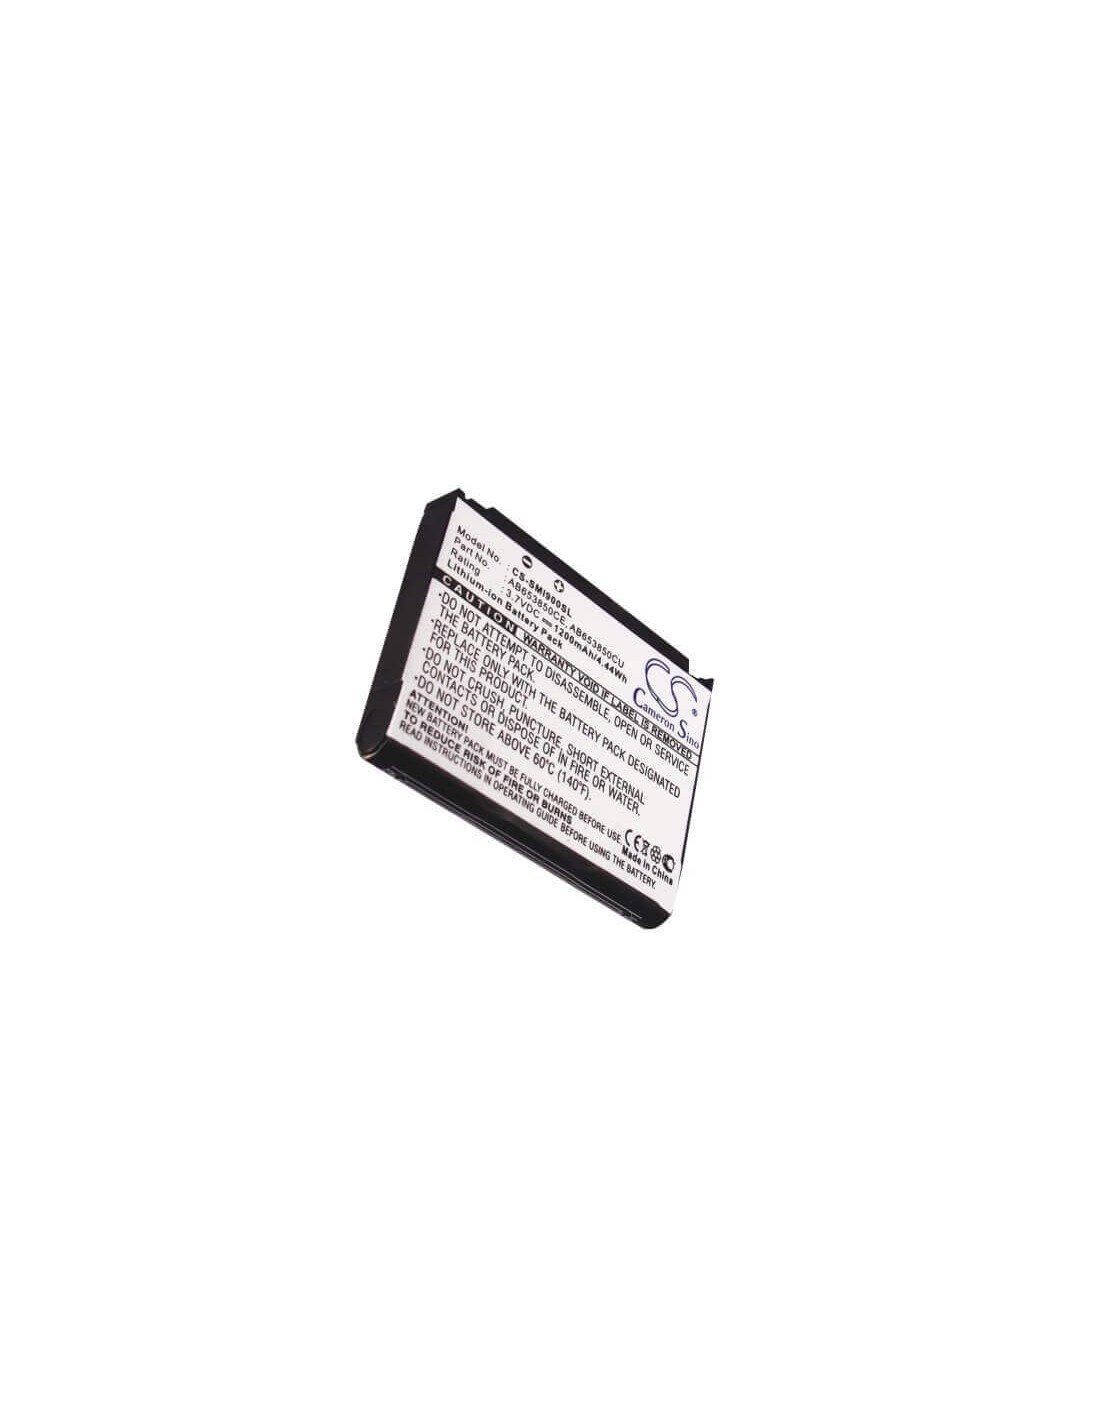 Battery for Samsung SGH-i900, SGH-i900v, SGH-i908 3.7V, 1200mAh - 4.44Wh